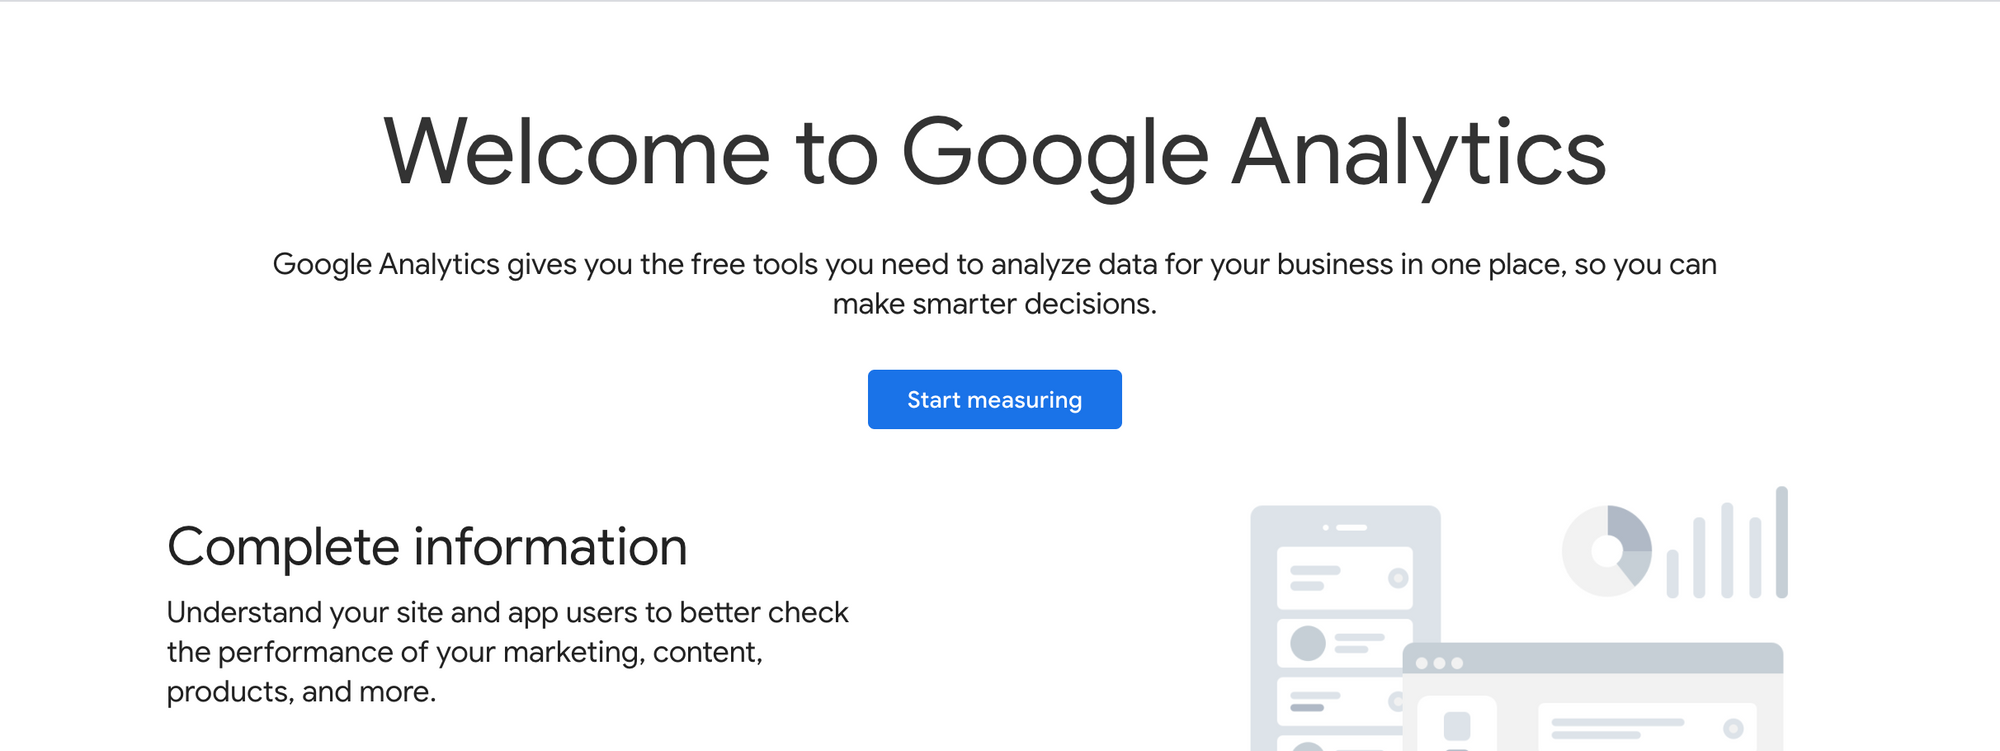 SEO Agency Tools - Google Analytics